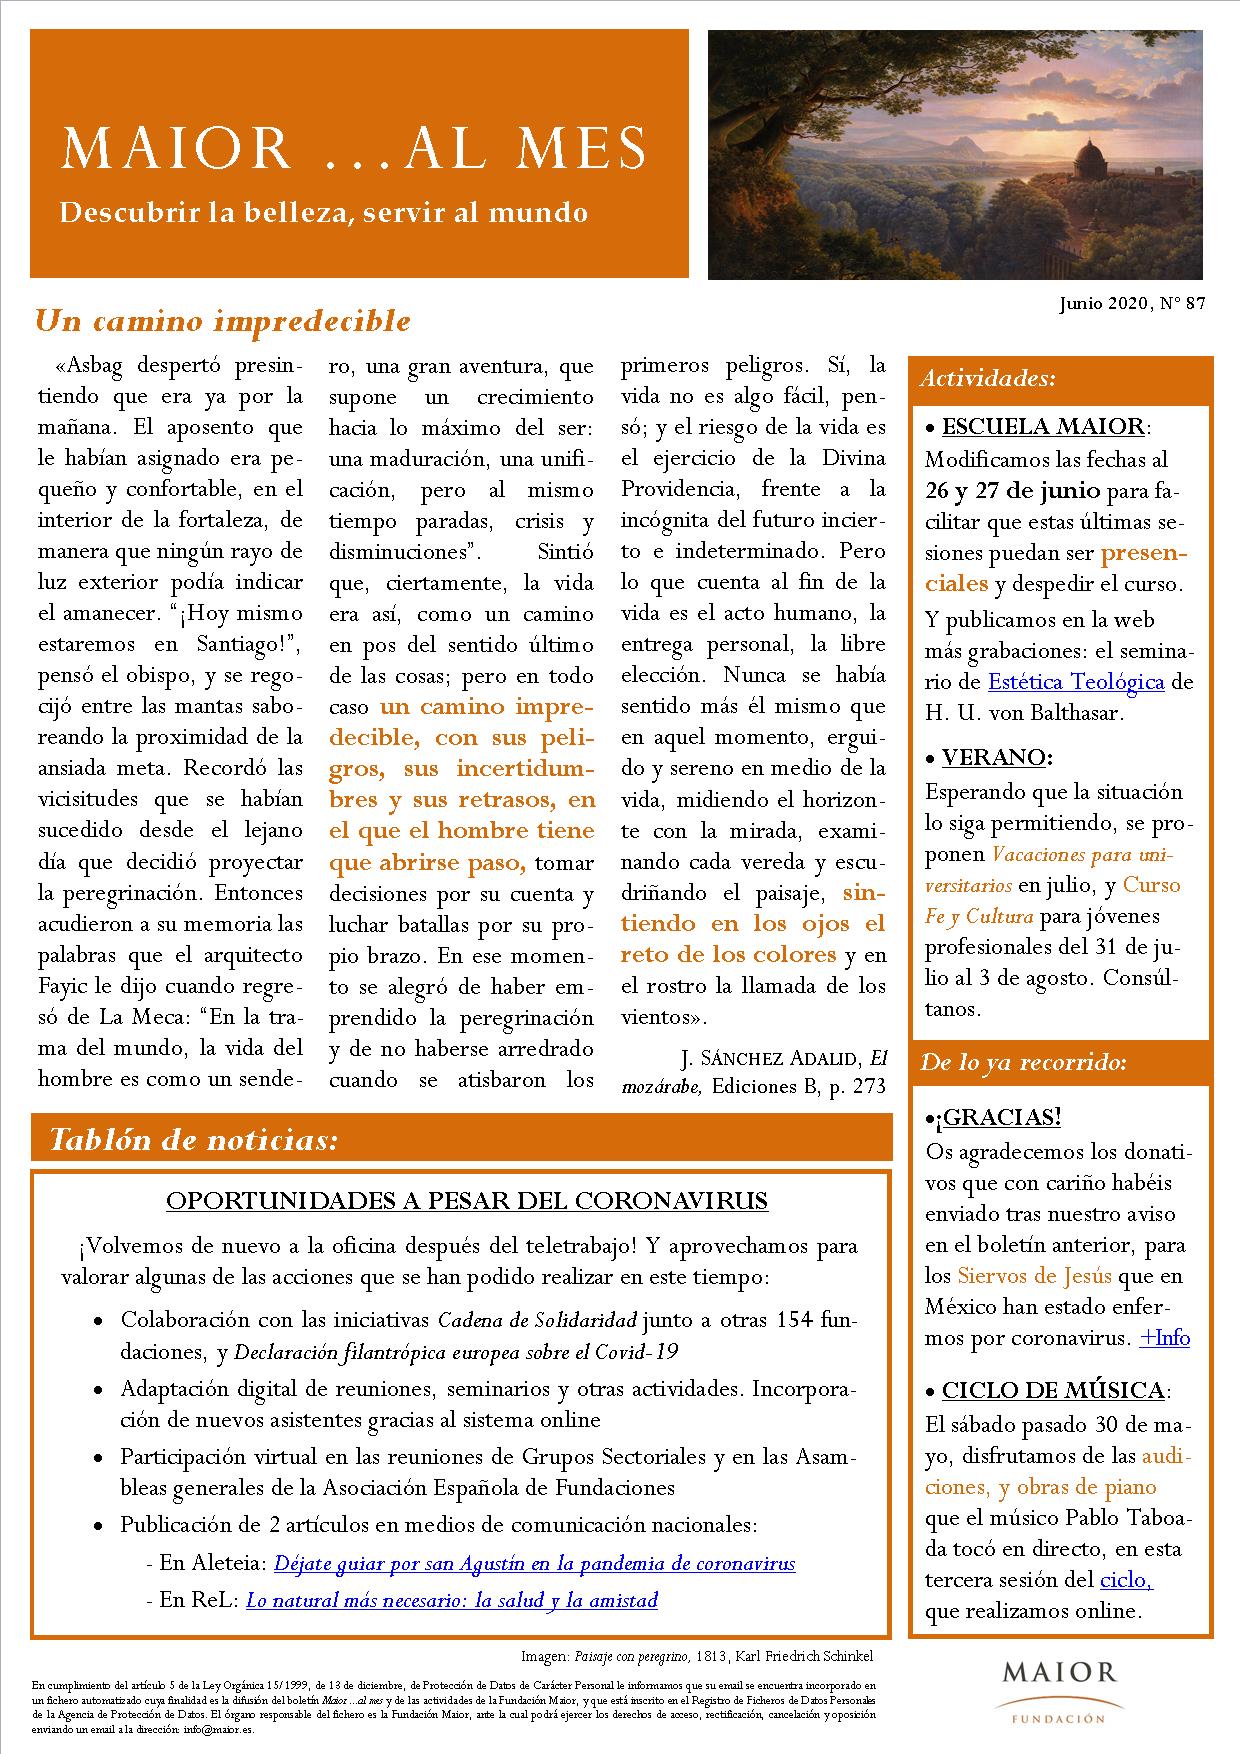 Boletín mensual de noticias y actividades de la Fundación Maior. Edición de junio 2020